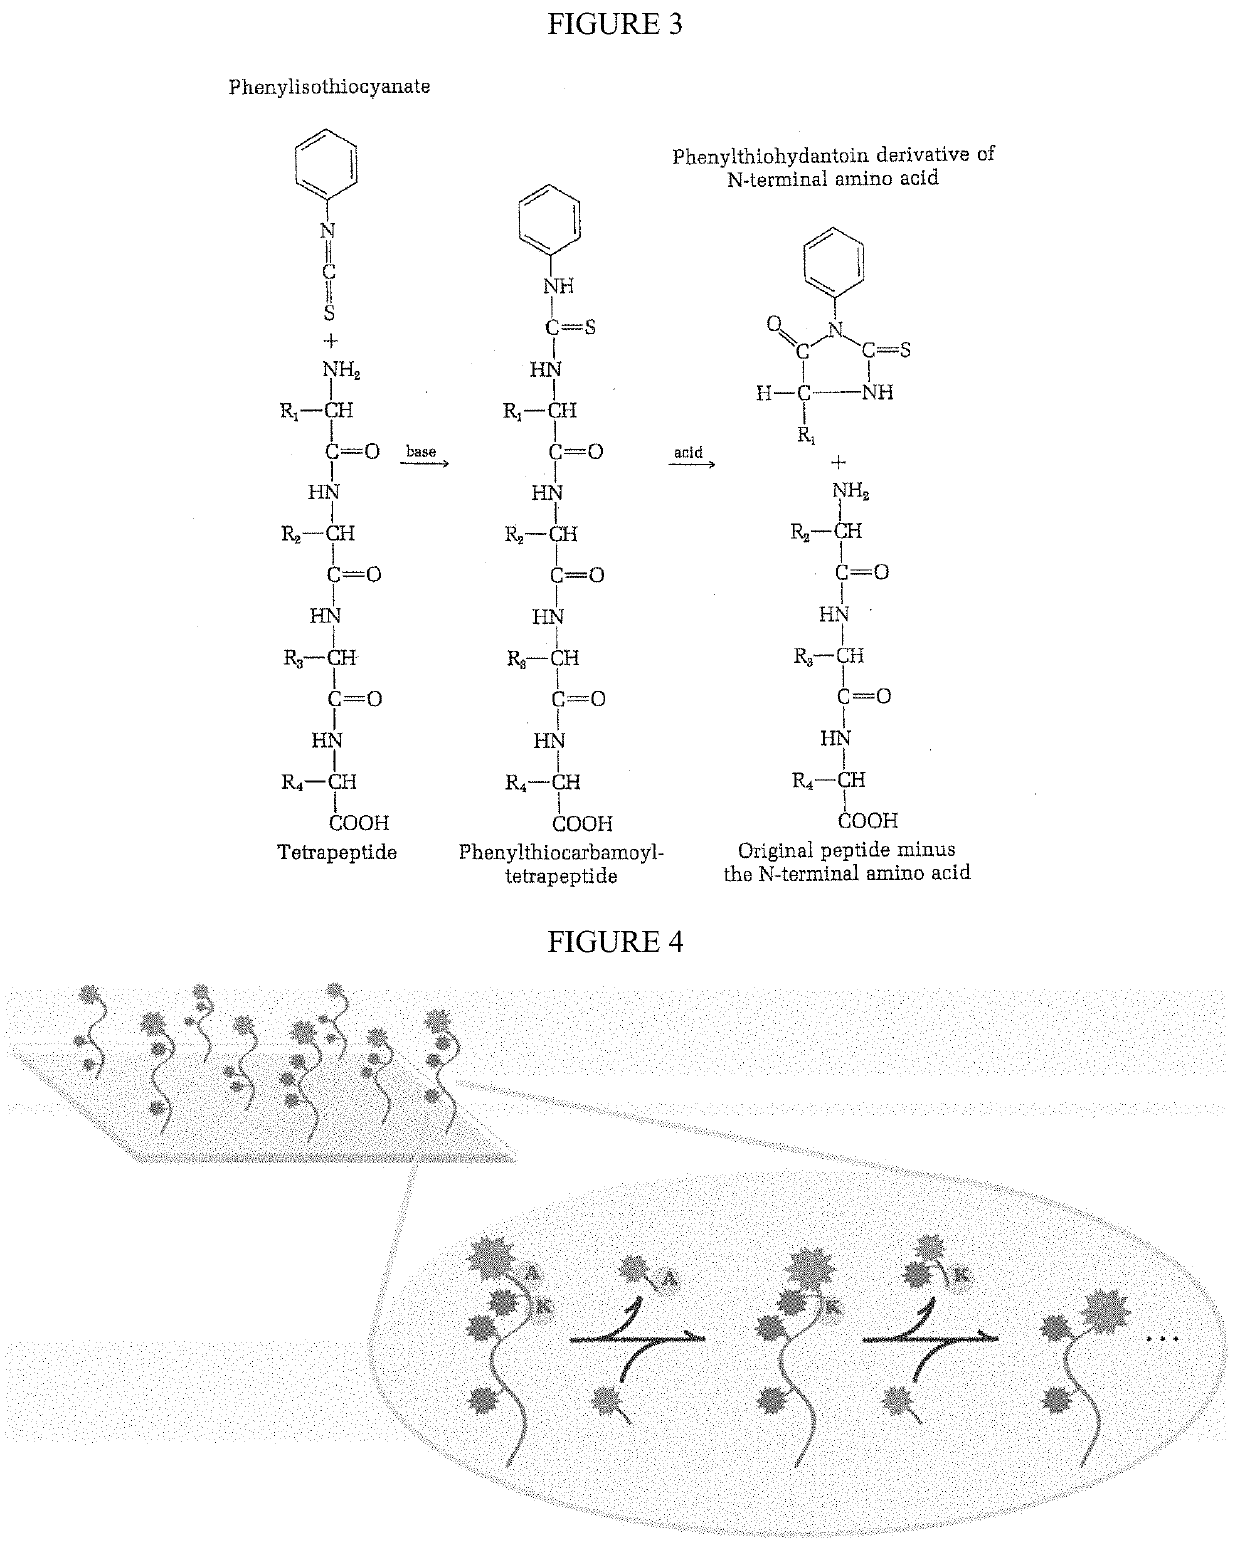 Single molecule peptide sequencing